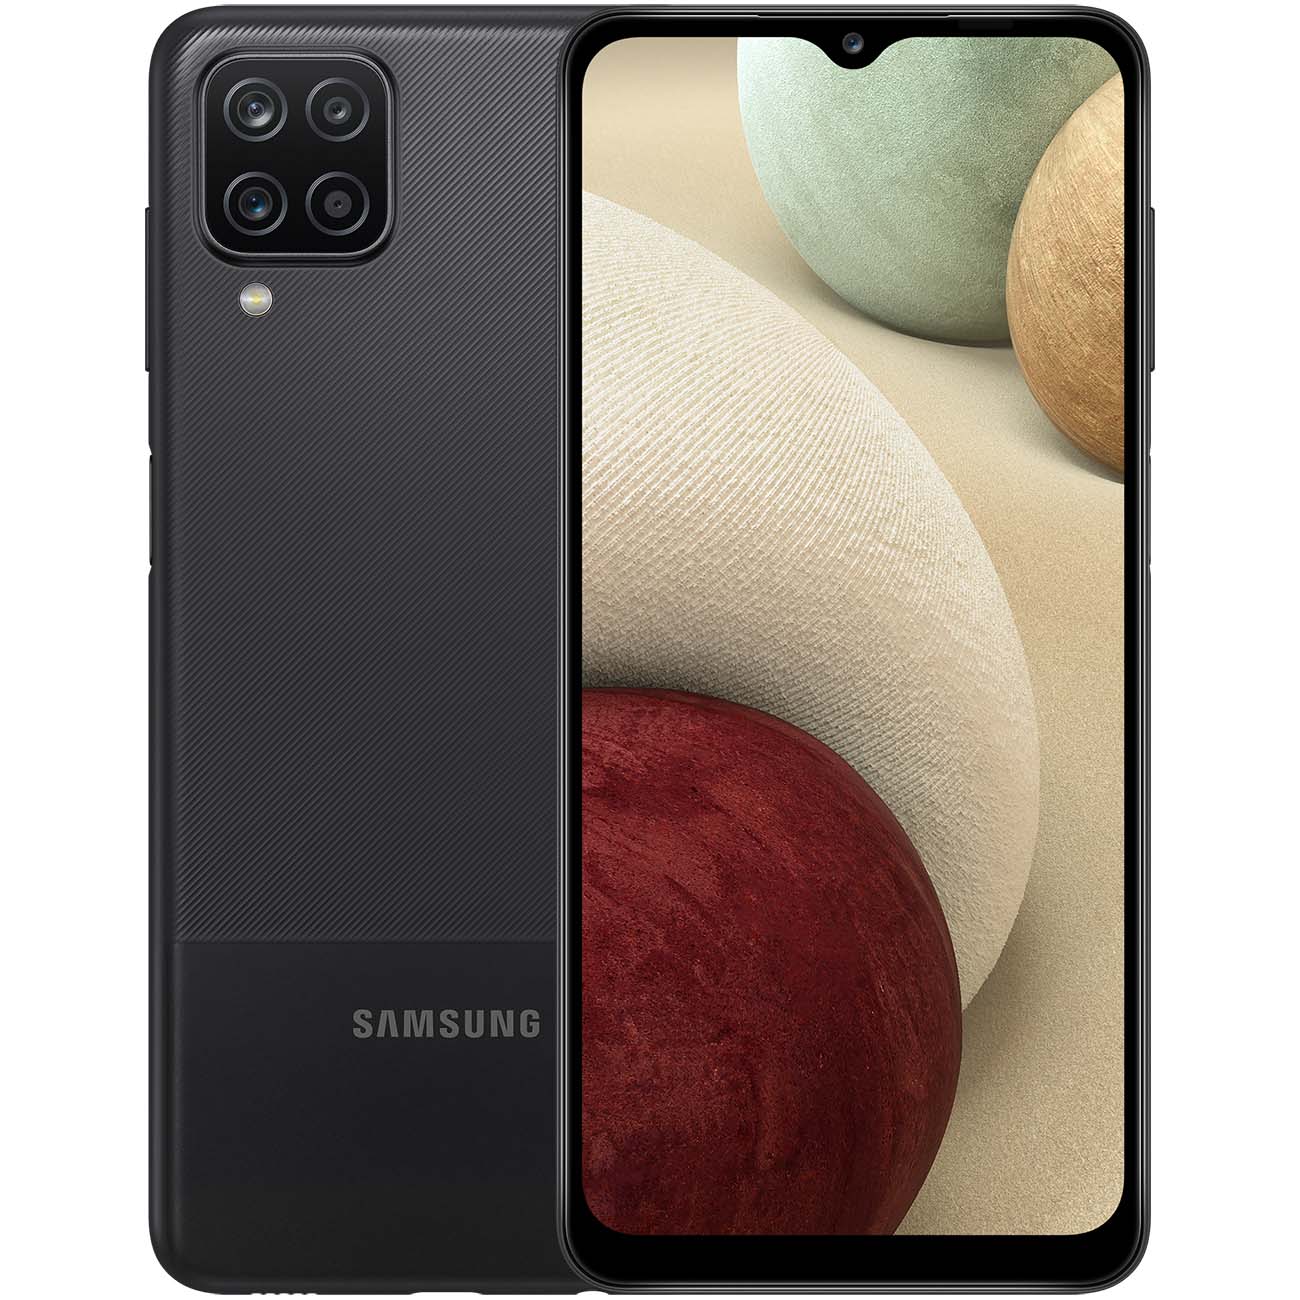 Купить смартфон samsung galaxy a12 64gb black (sm-a127f) A-Серия в официальном магазине Apple, Samsung, Xiaomi. iPixel.ru Купить, заказ, кредит, рассрочка, отзывы,  характеристики, цена,  фотографии, в подарок.